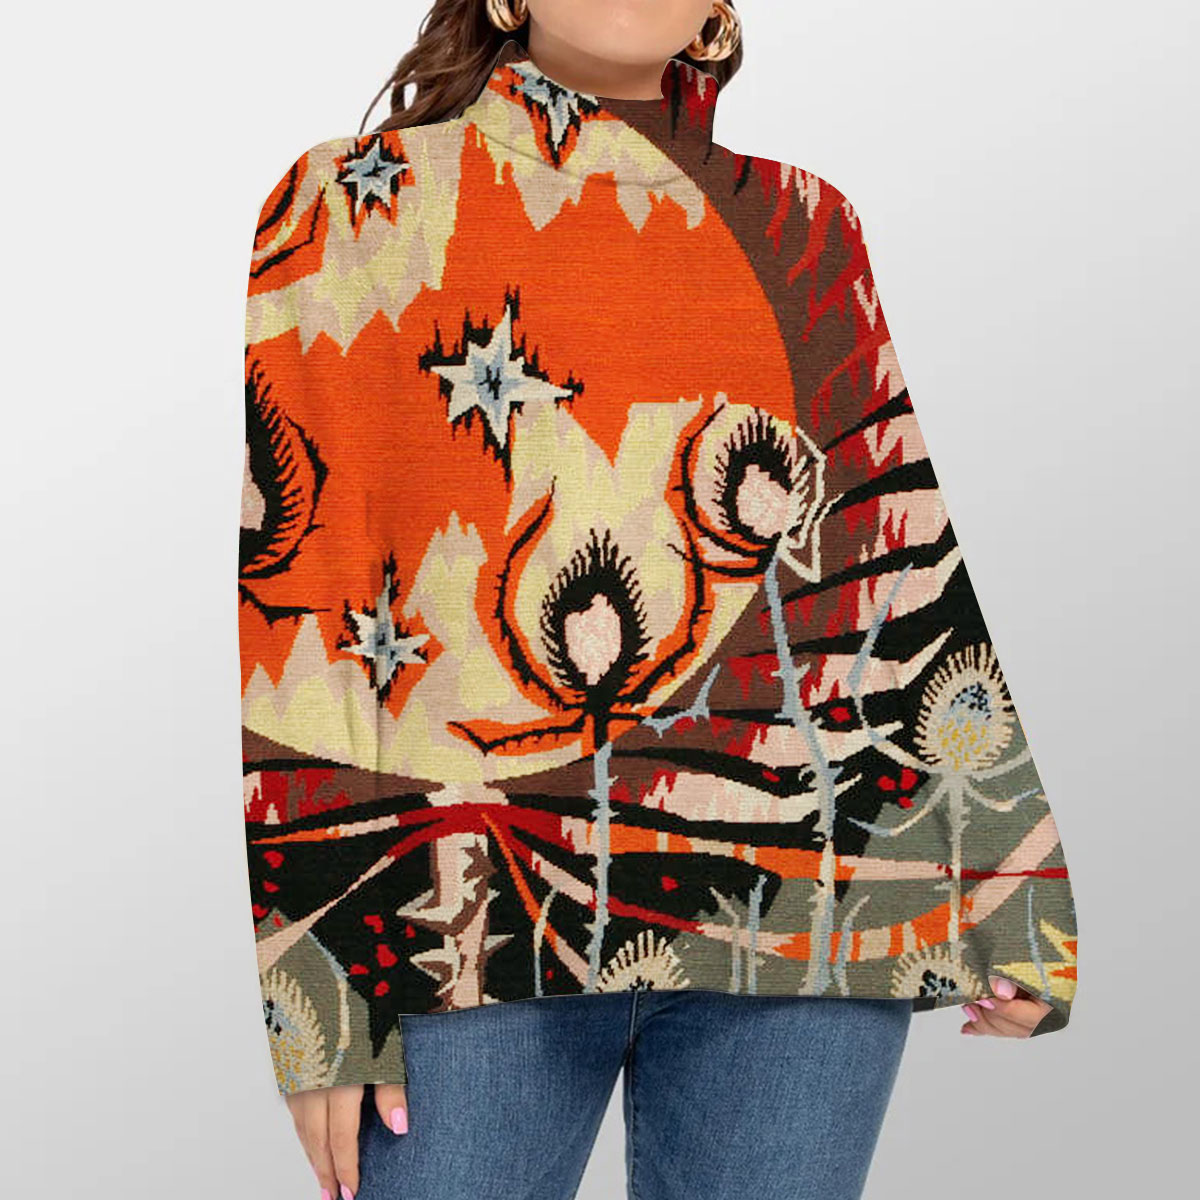 Viard Mid Century Modern Turtleneck Sweater